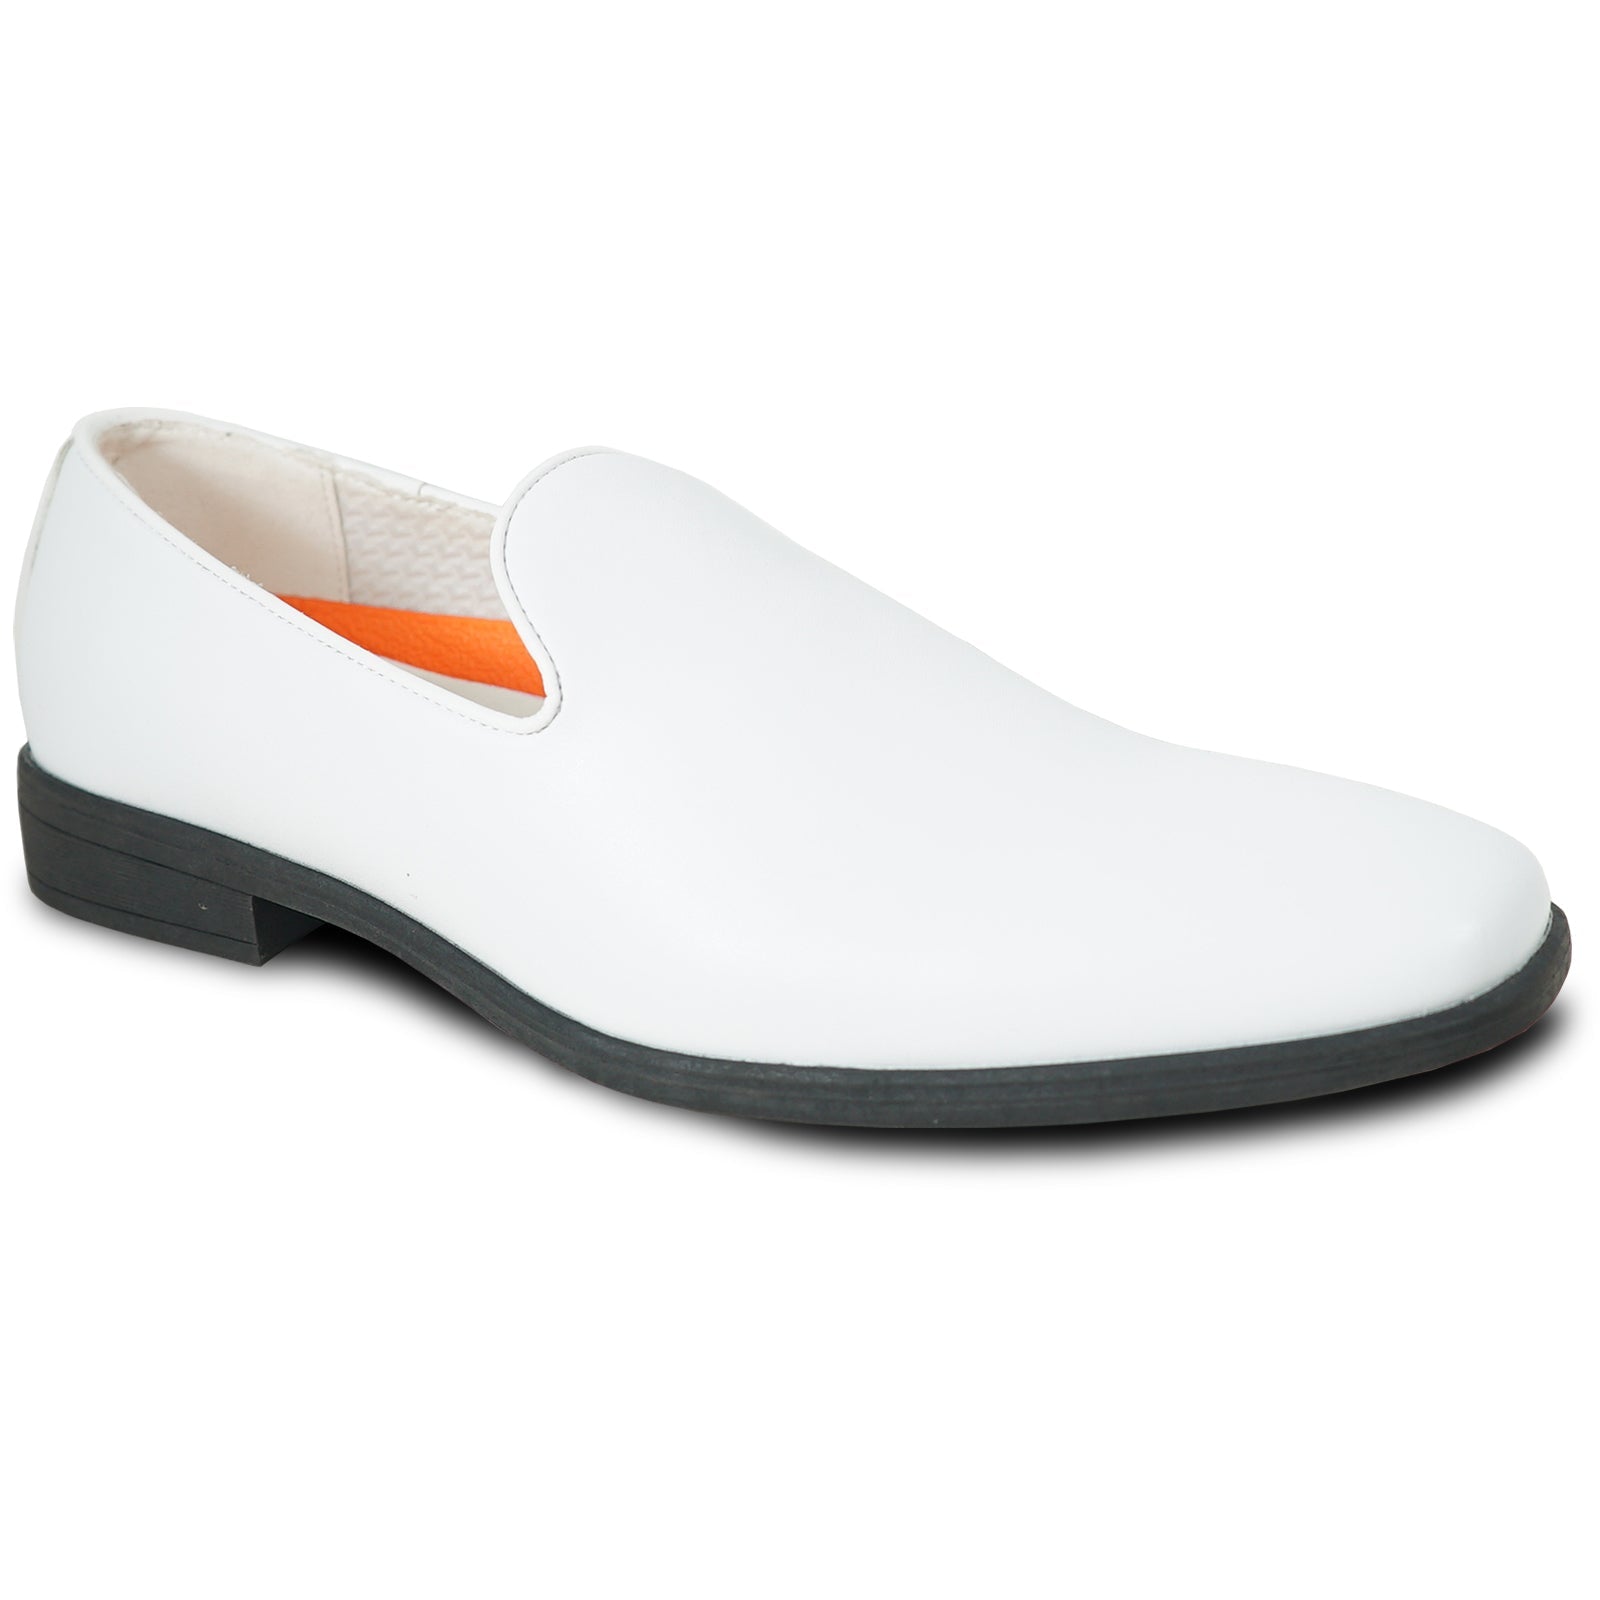 "White Men's Classic Slip-On Loafer Dress Shoe - Plain Toe Style"